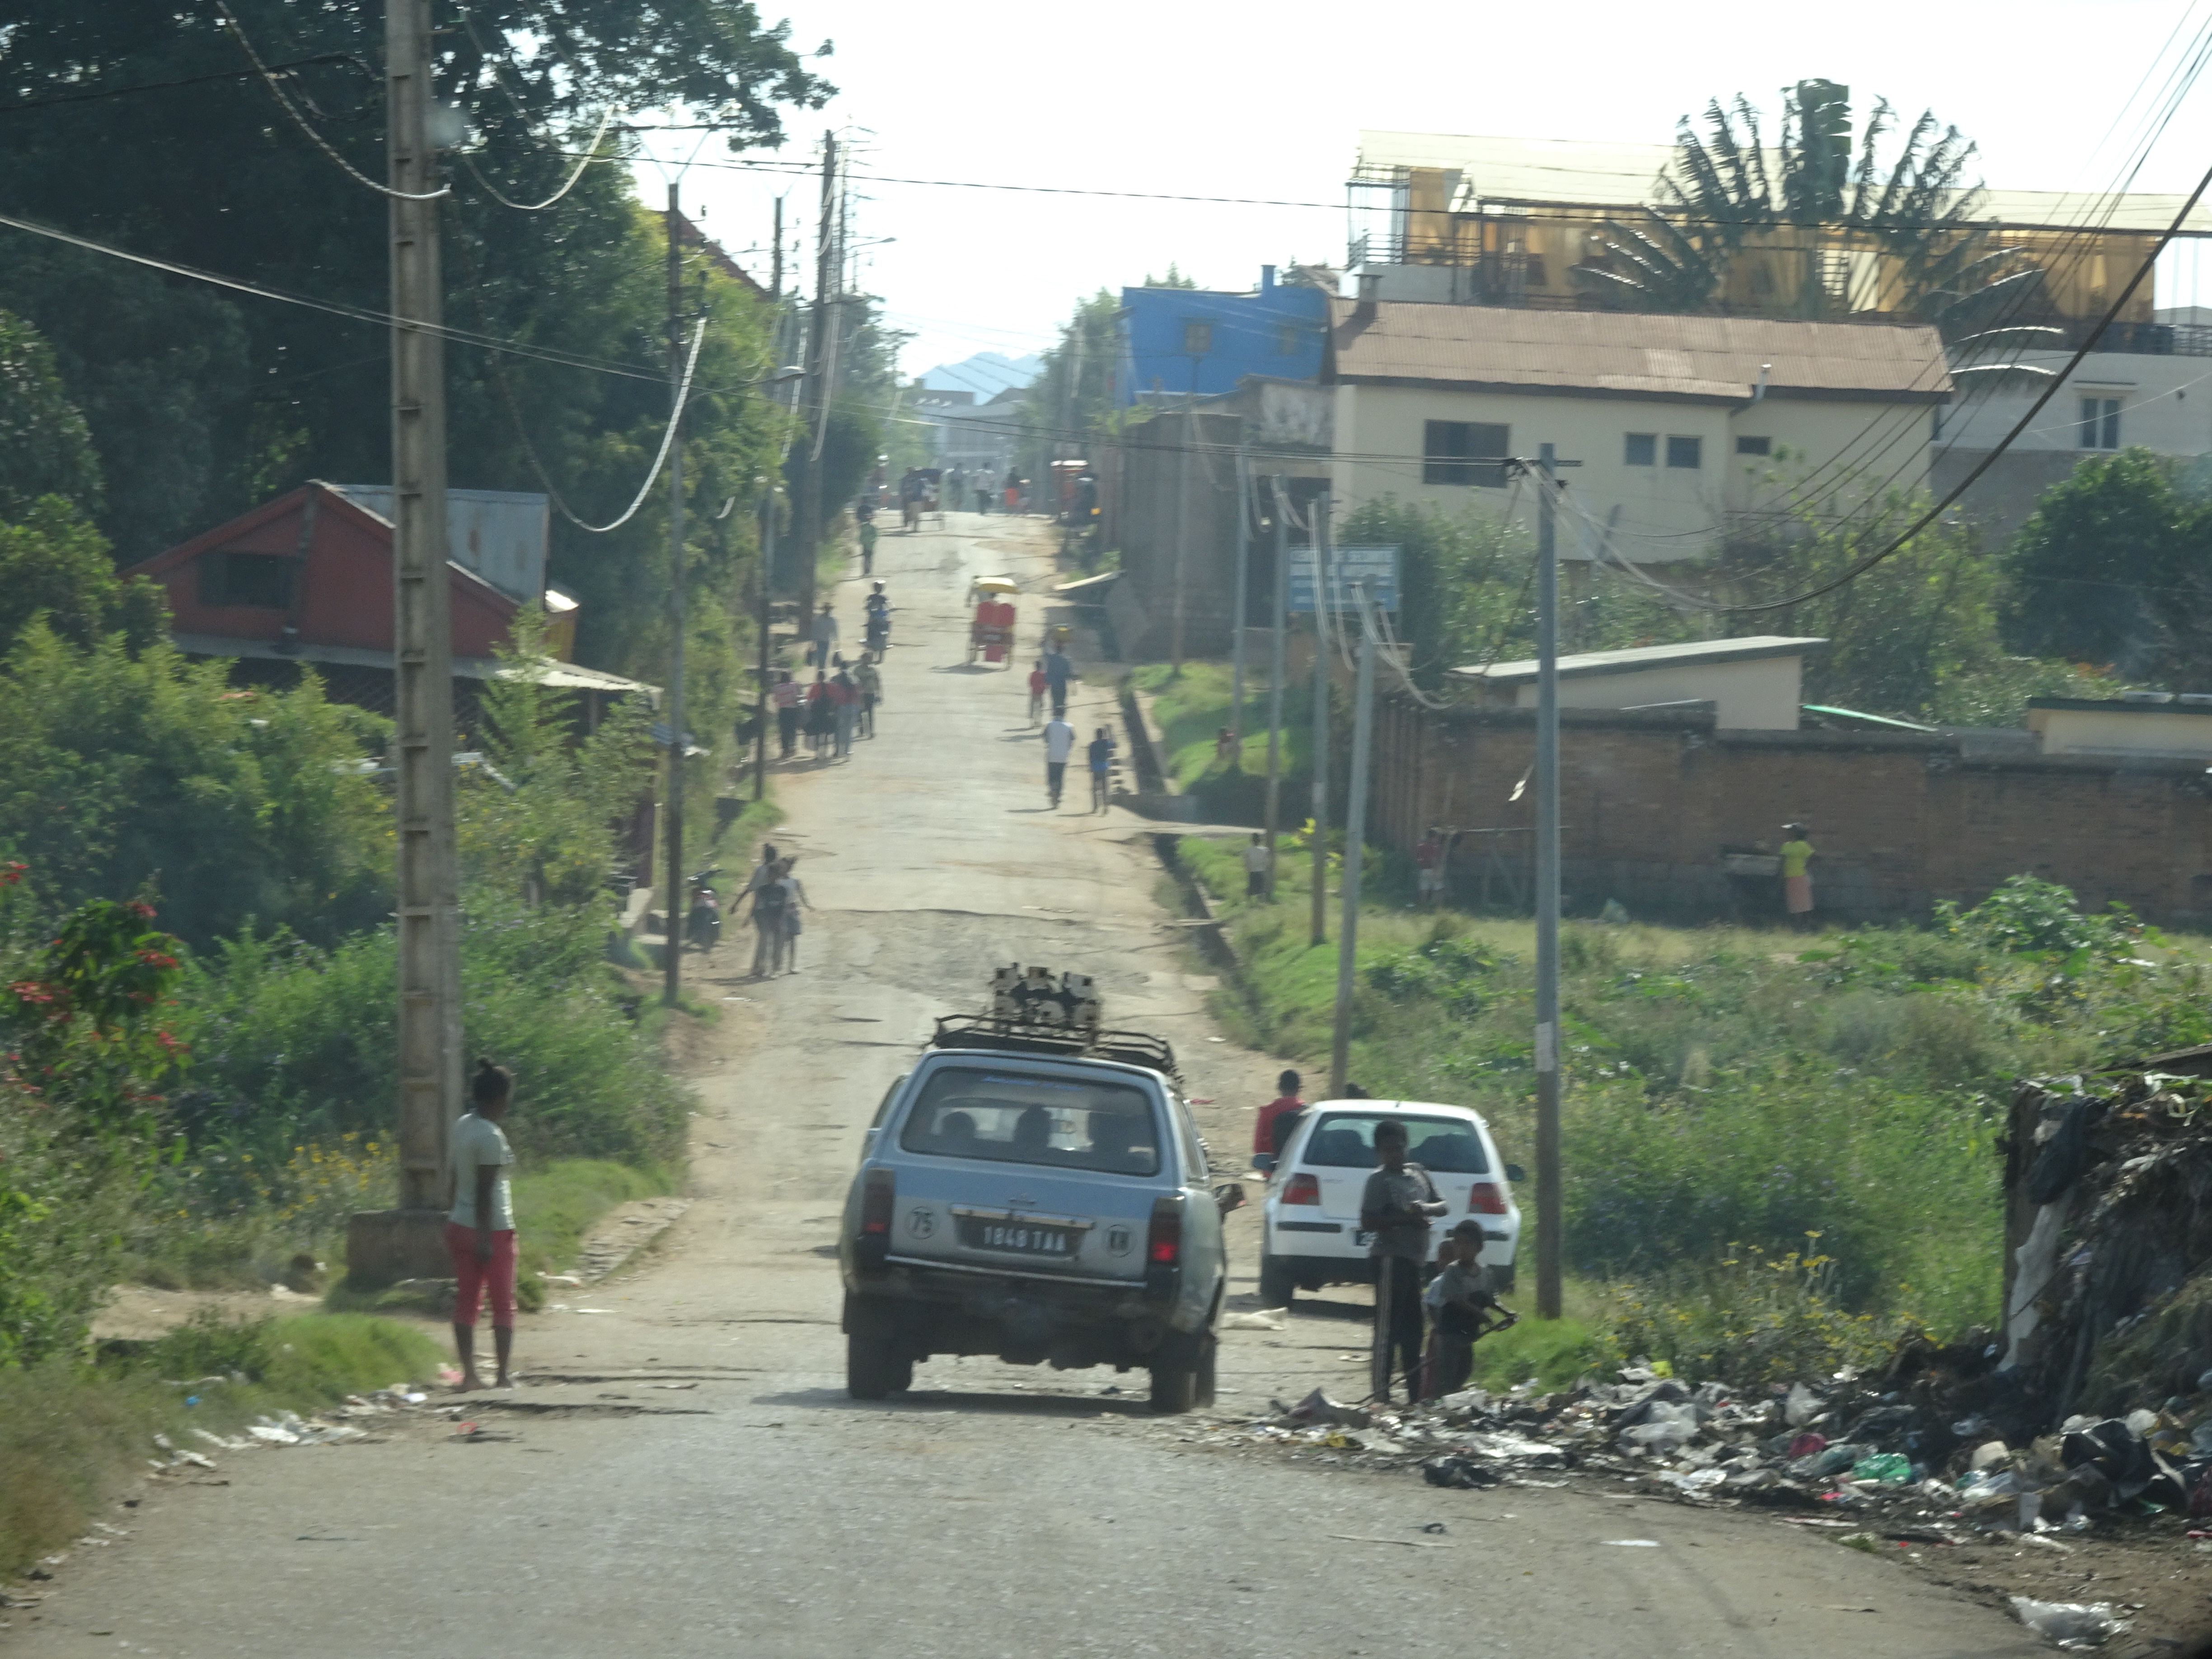 Bambini a bordo strada (Madagascar, 2018)